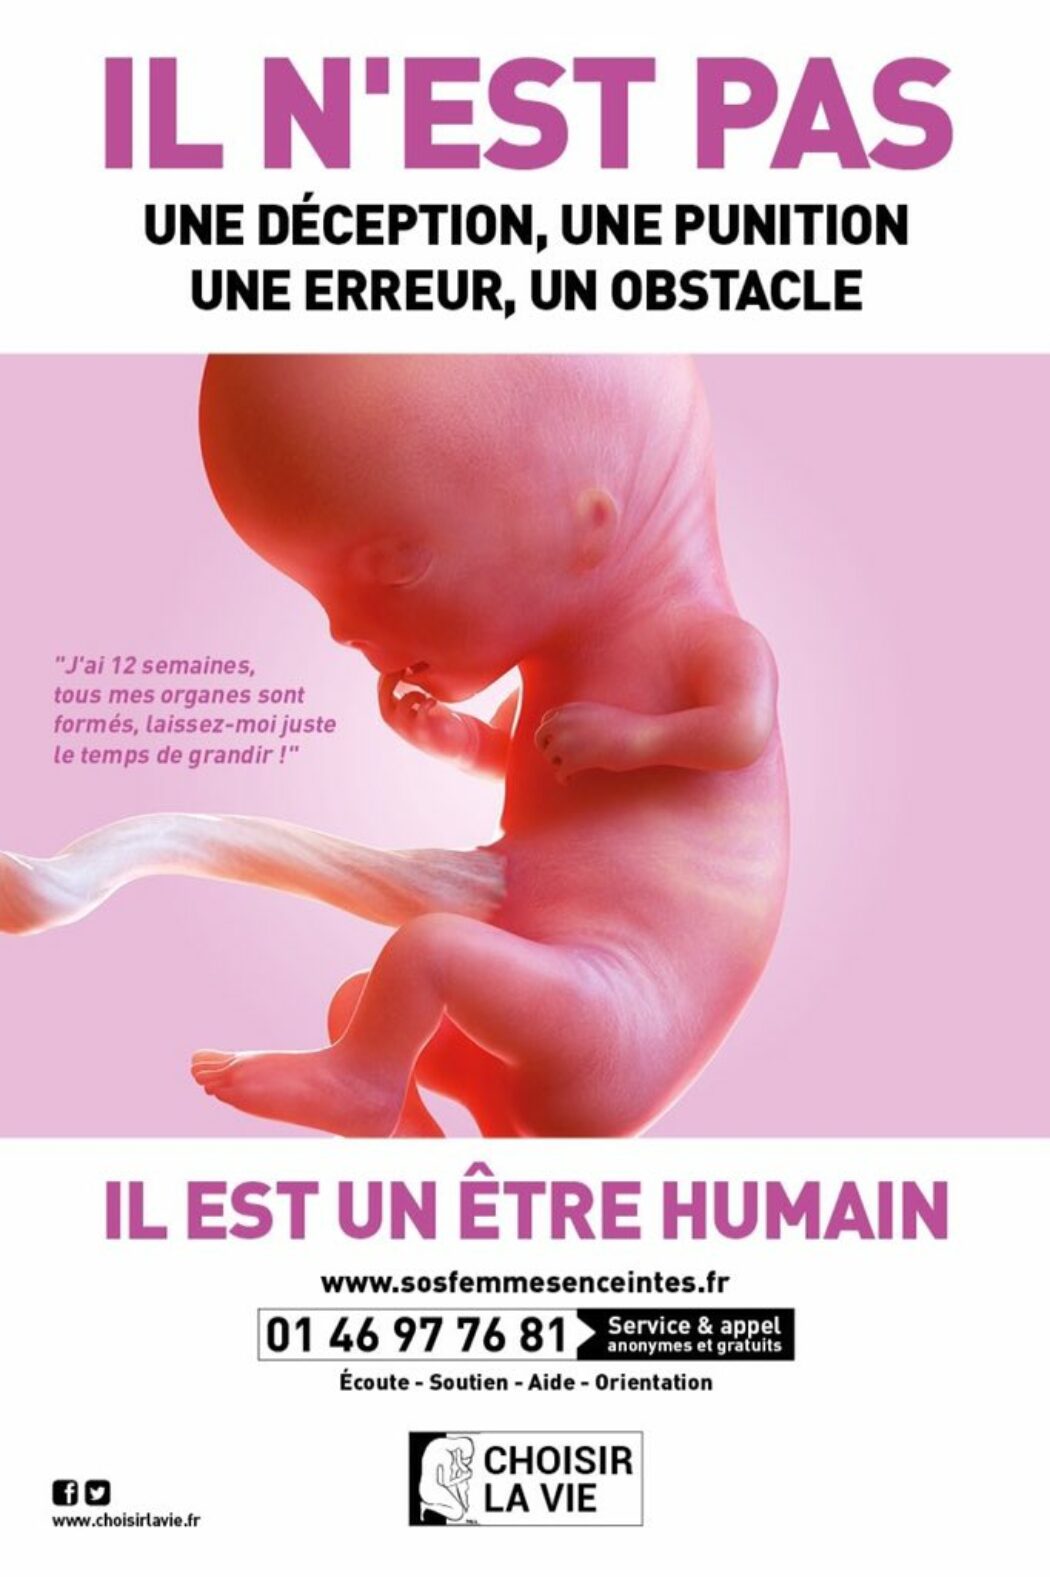 Un acharnement idéologique à nier que l’embryon est un être humain